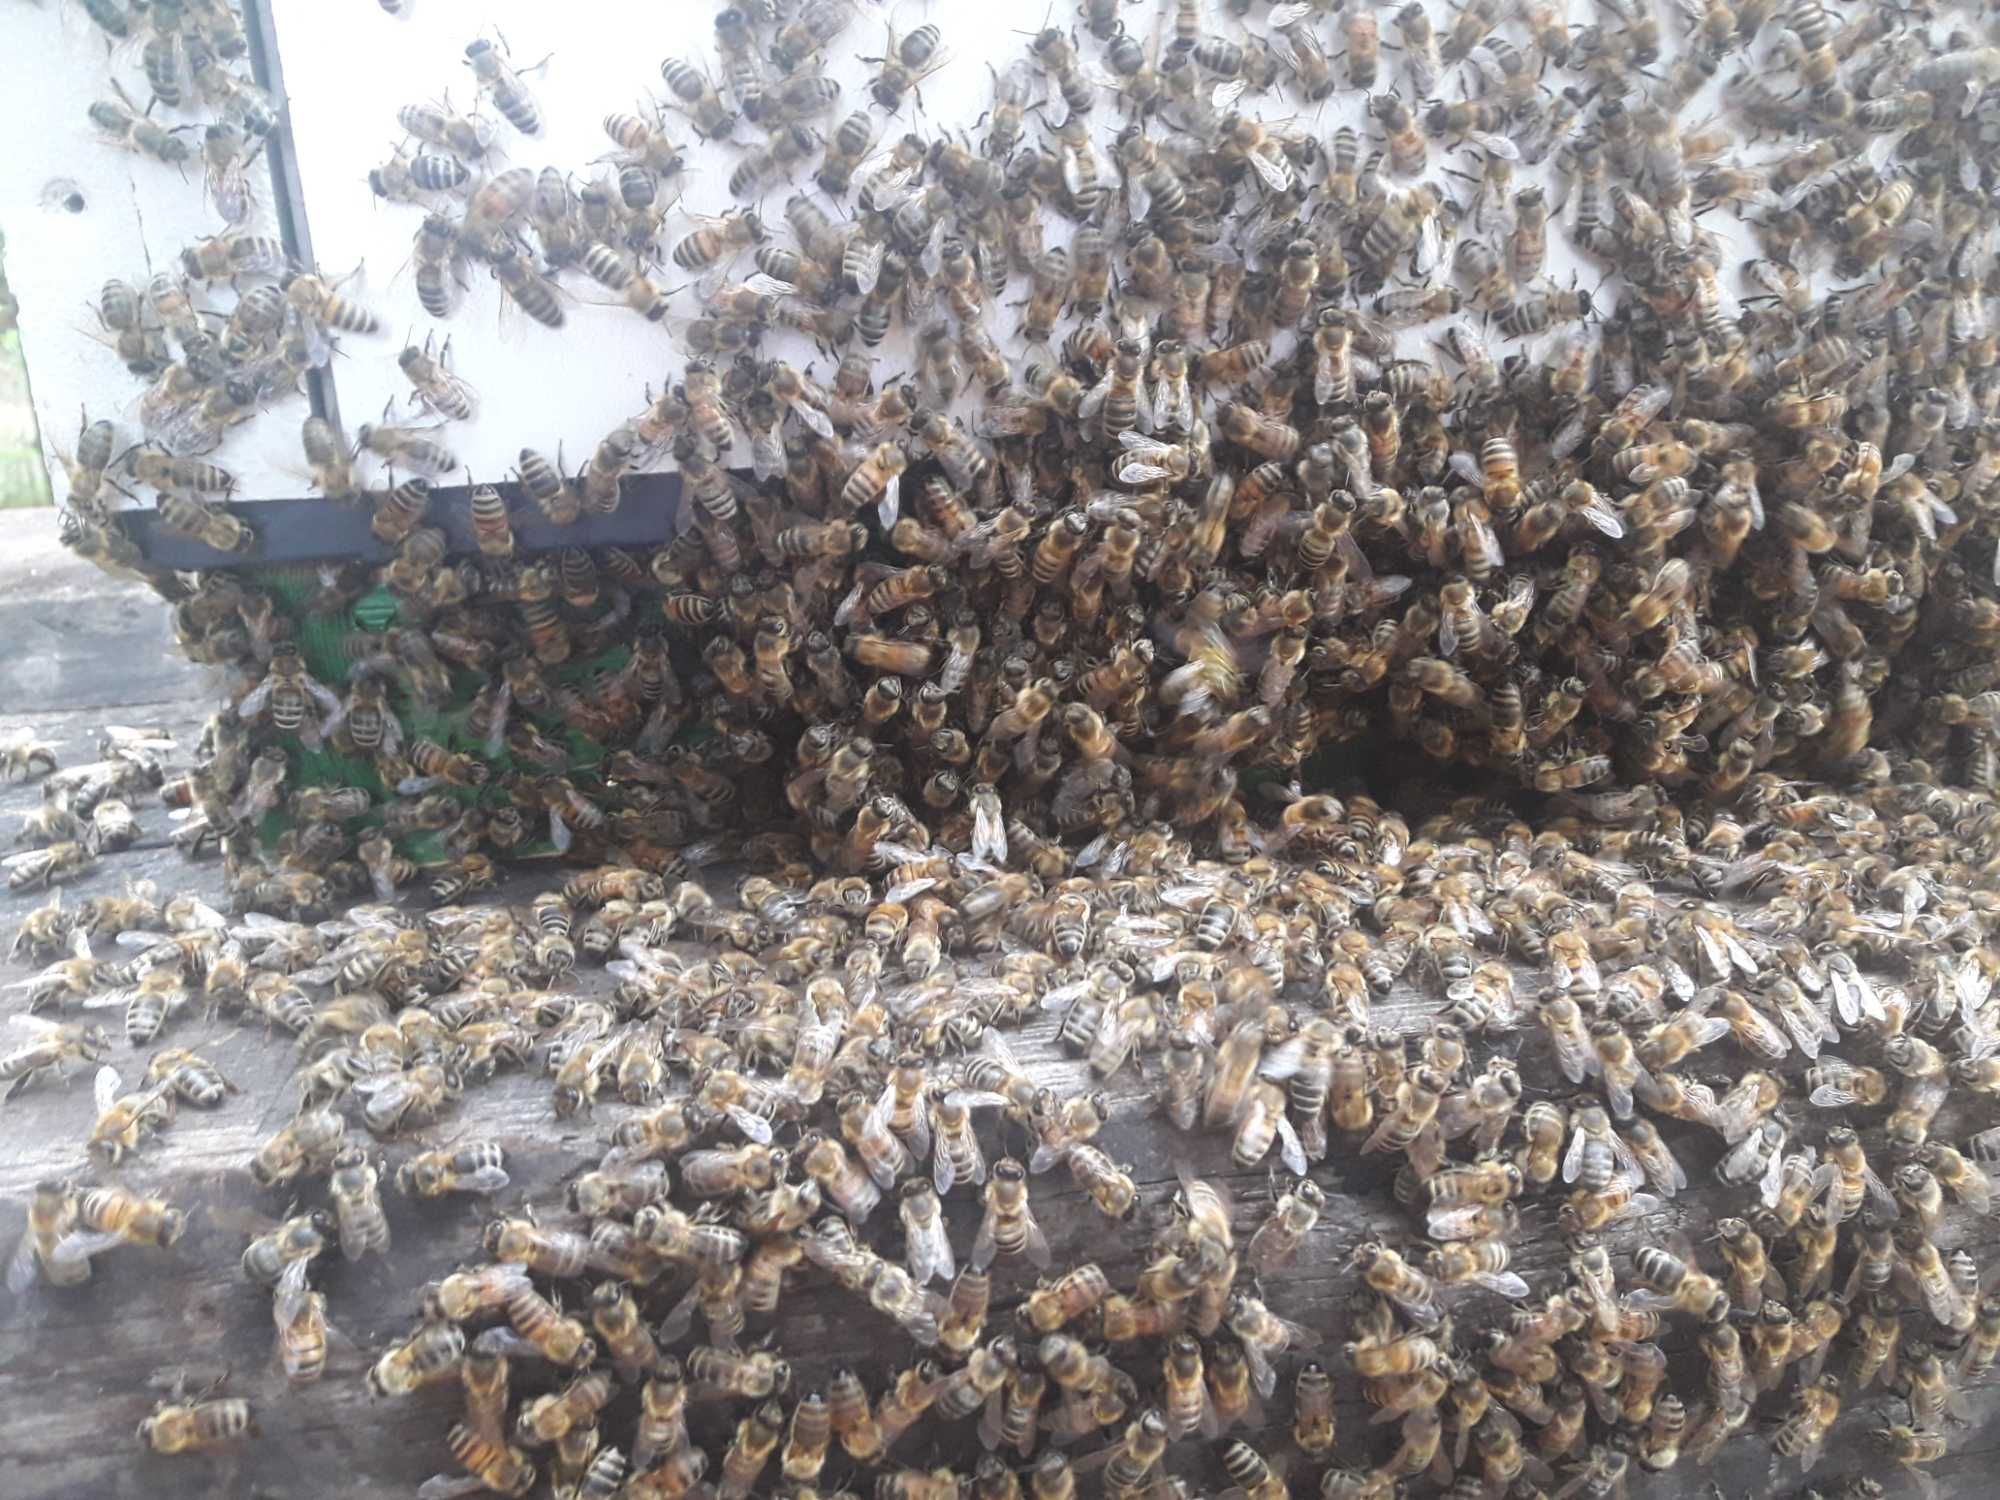 Pszczoly rodziny pszczele ul z pszczolami odklady